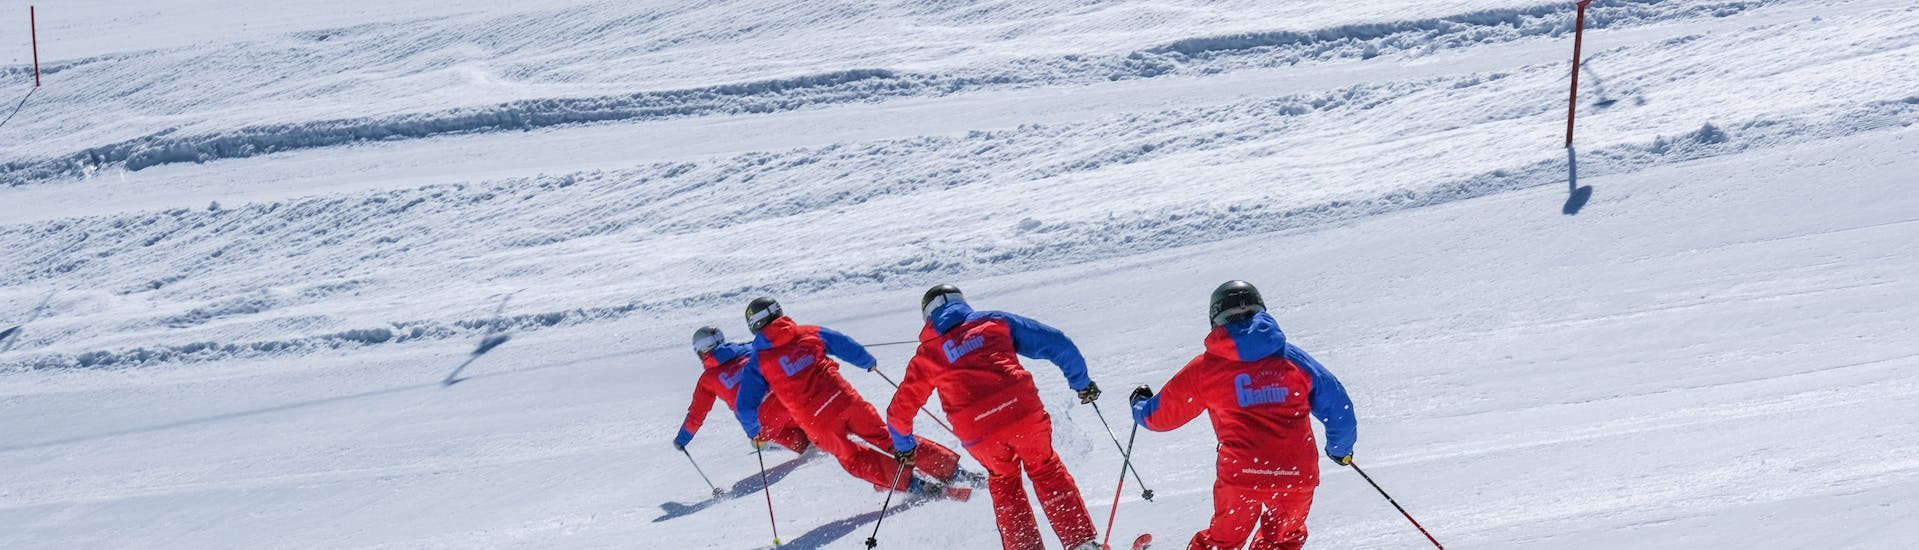 Lezioni di sci per bambini a partire da 14 anni per principianti.